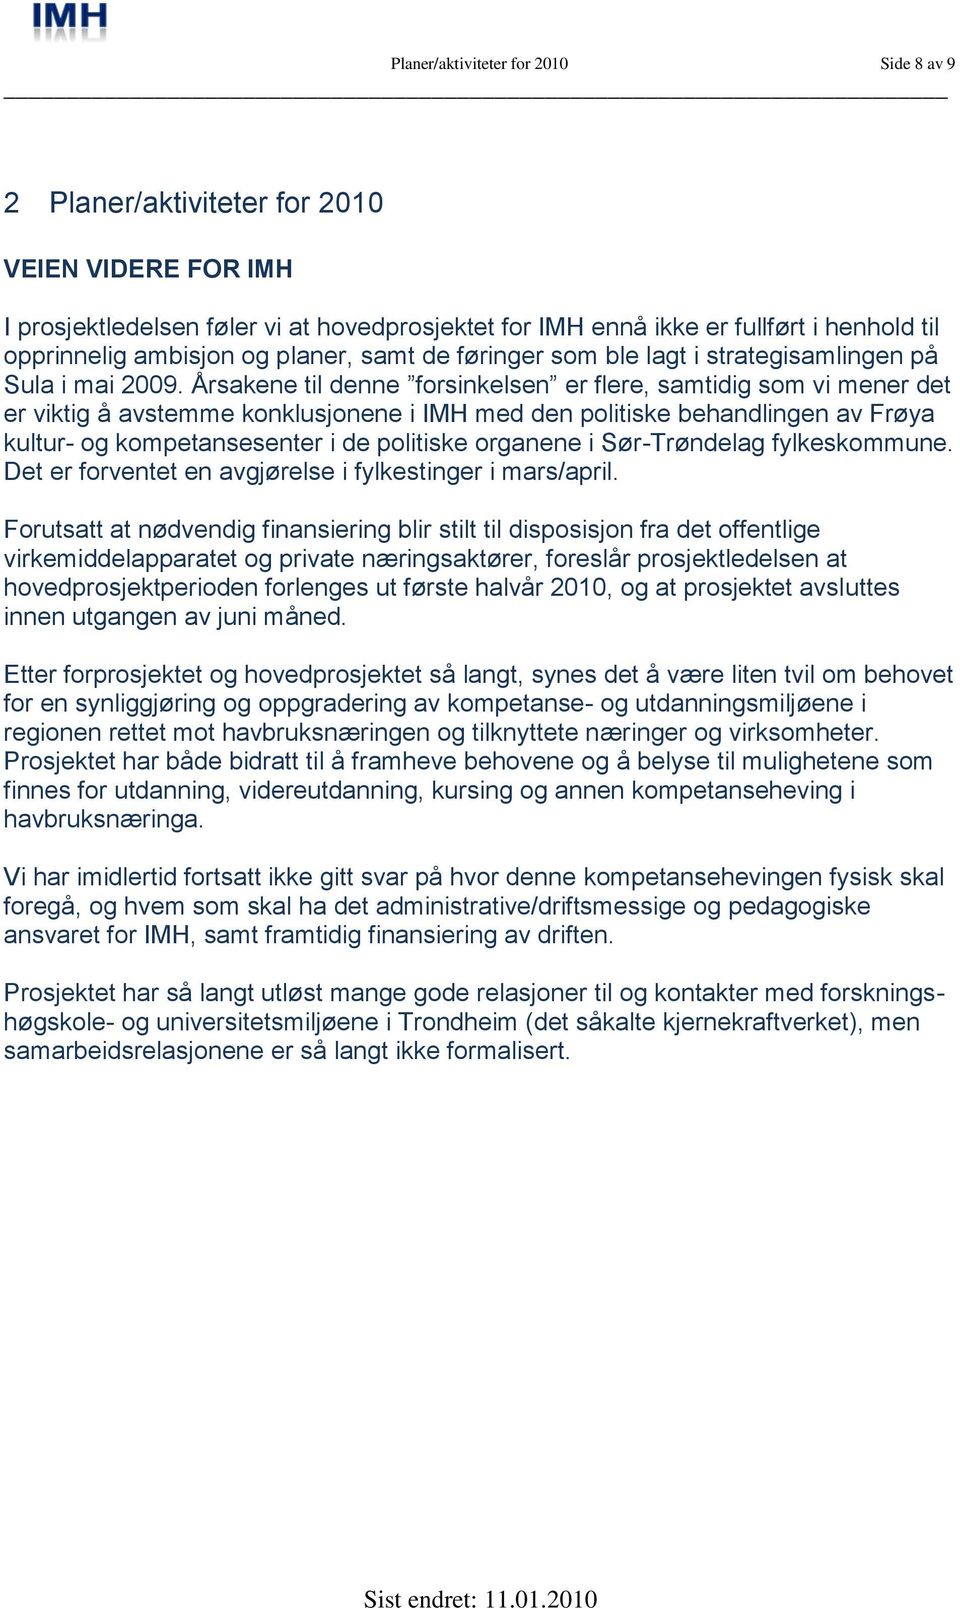 Årsakene til denne forsinkelsen er flere, samtidig som vi mener det er viktig å avstemme konklusjonene i IMH med den politiske behandlingen av Frøya kultur- og kompetansesenter i de politiske